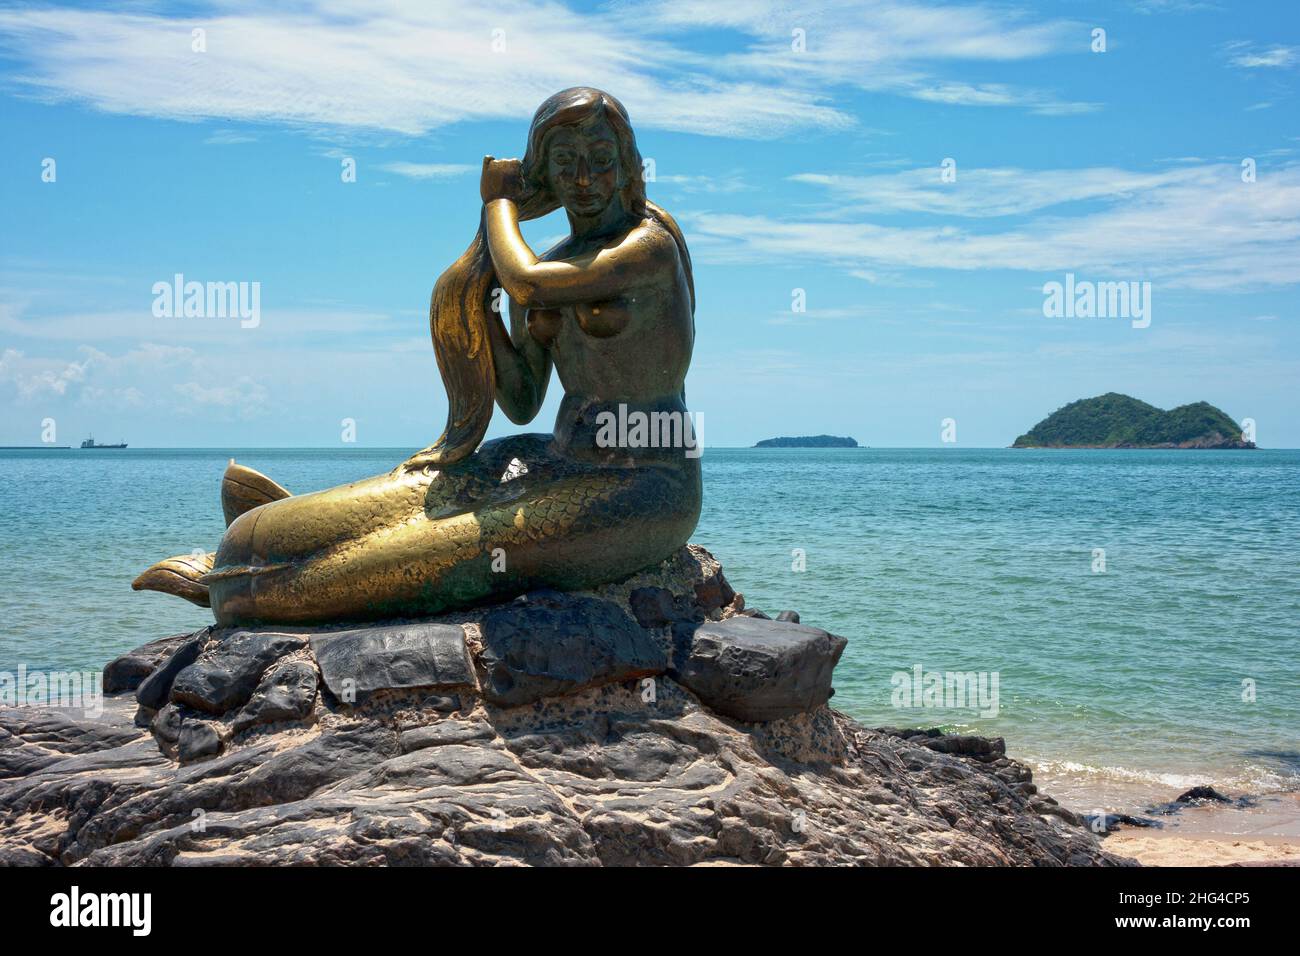 Songkhla, Thailandia - Luglio 23 2007: La statua dorata della sirena sulla spiaggia di Laem Samila è stata creata nel 1966 da Jitr Buabu. Foto Stock